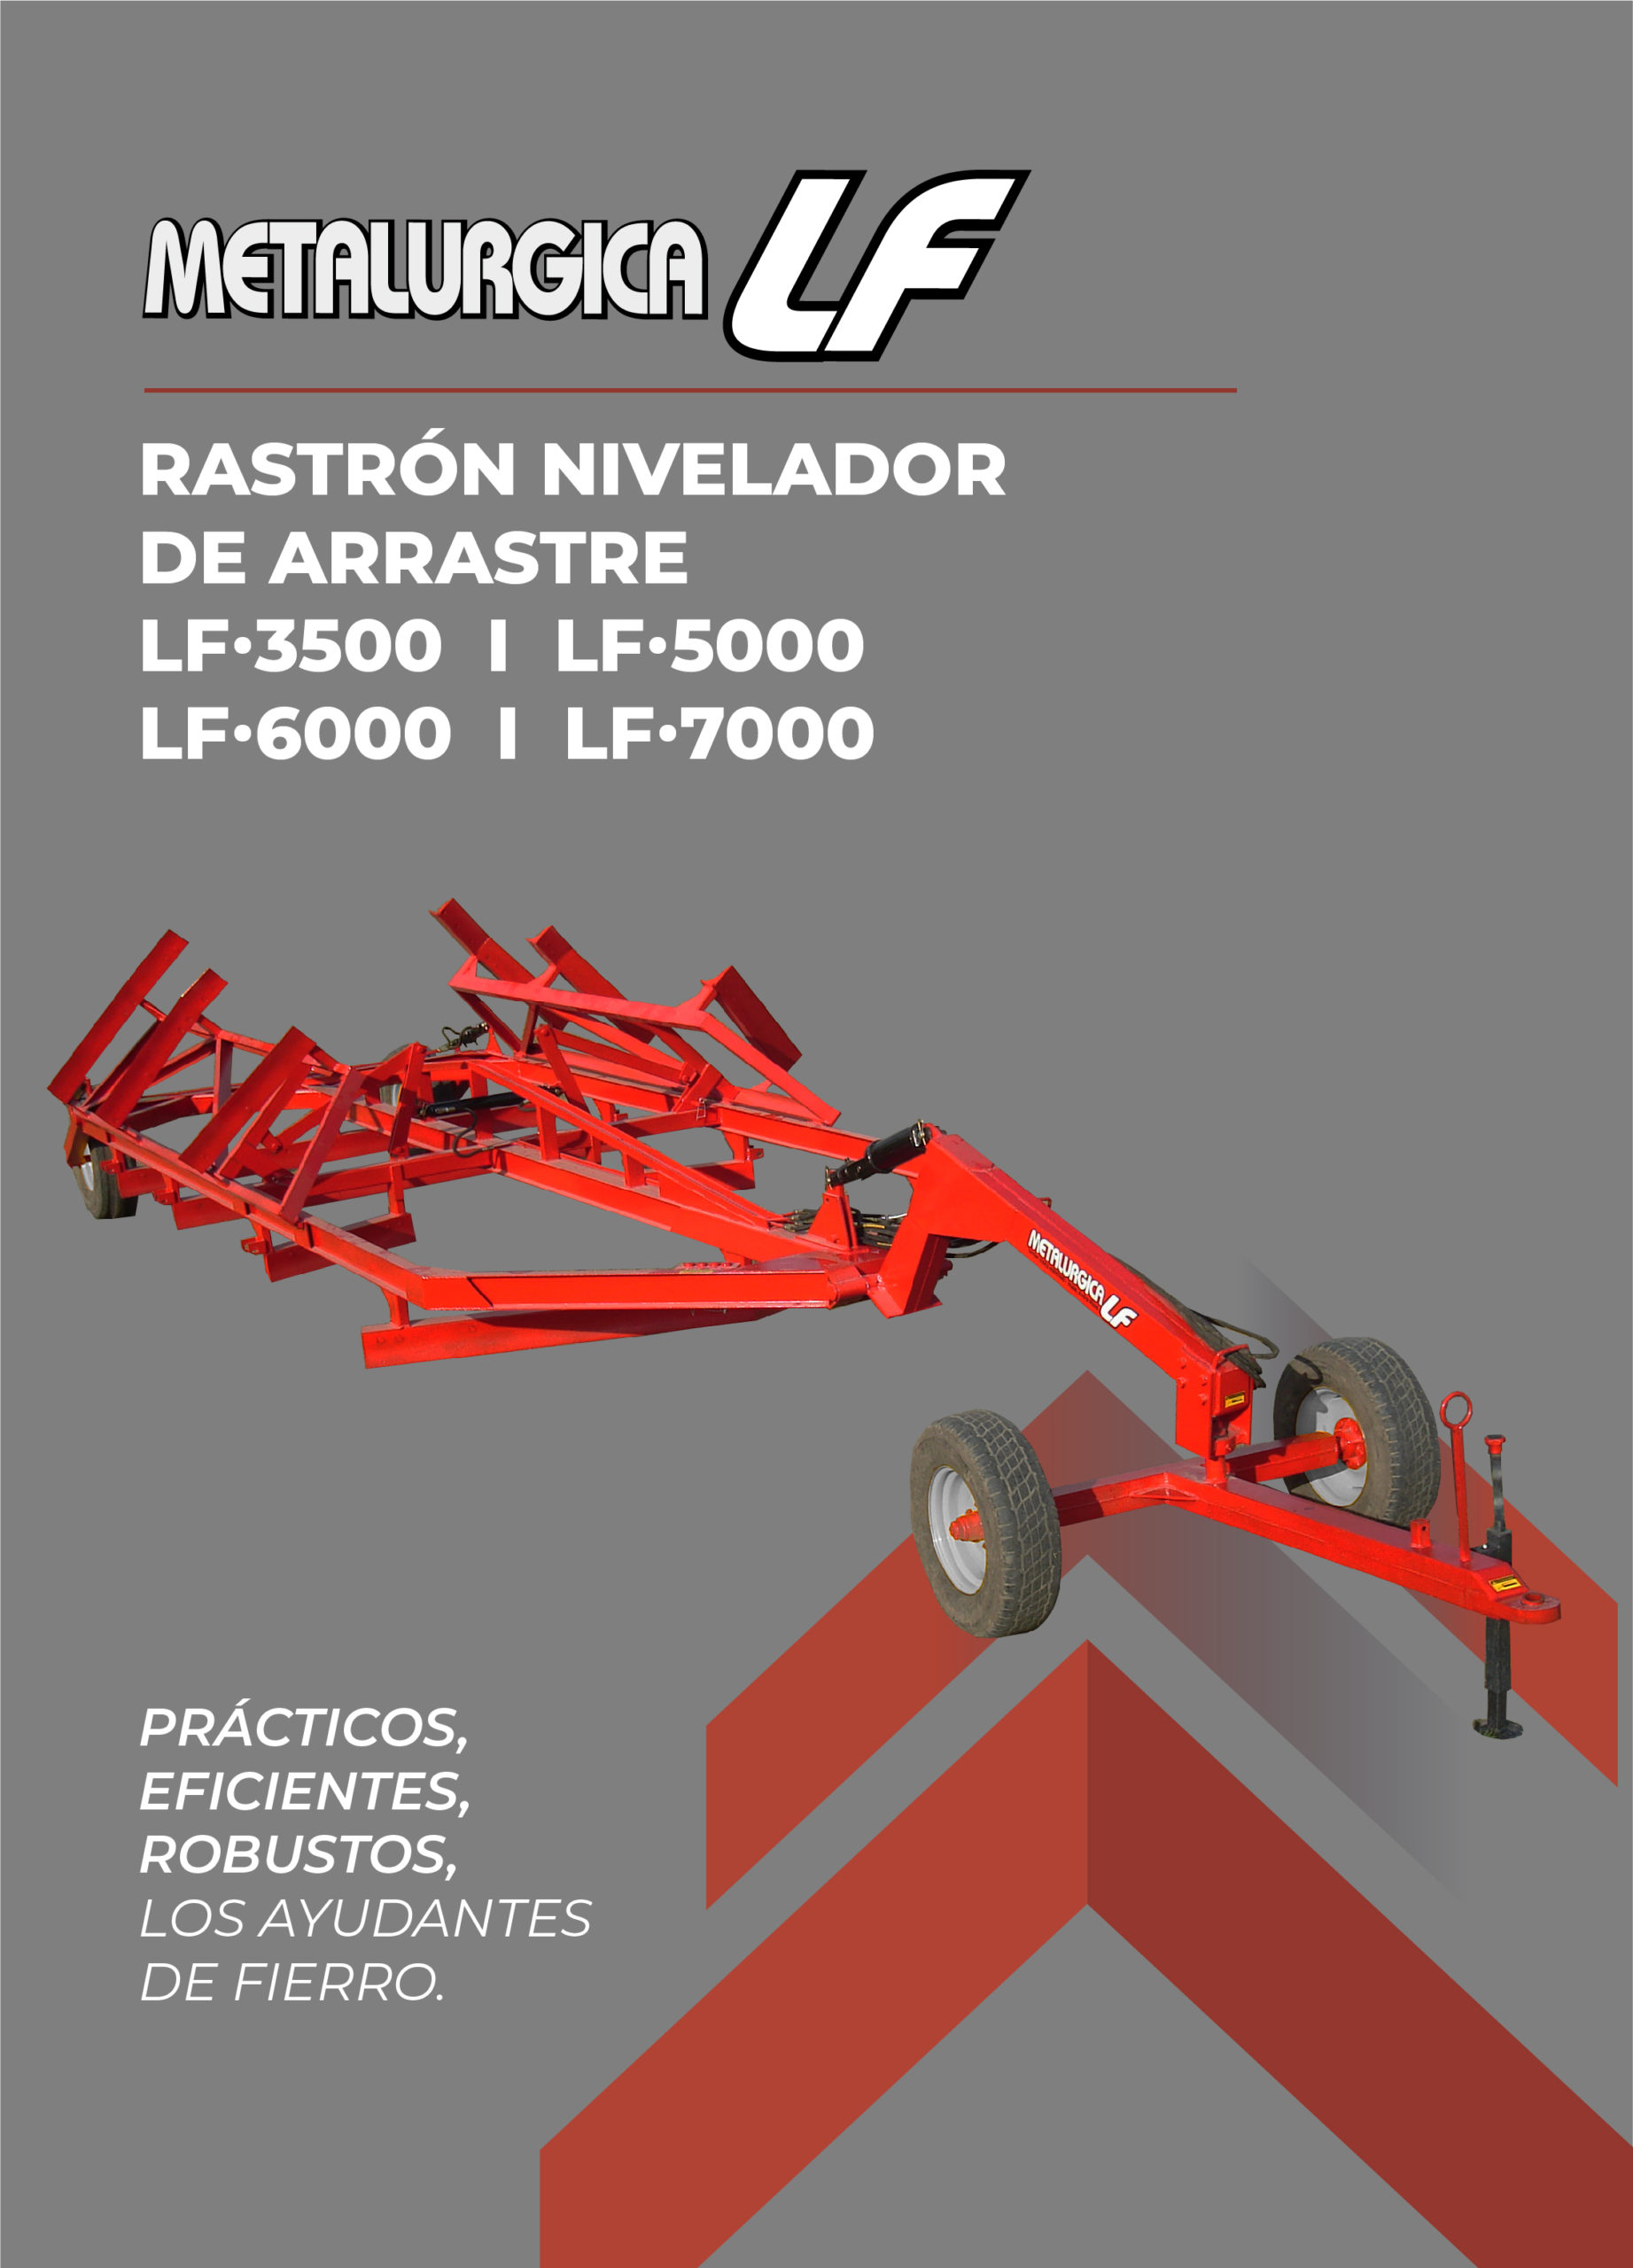 Rastrón Nivelador - Metalúrgica LF móvil